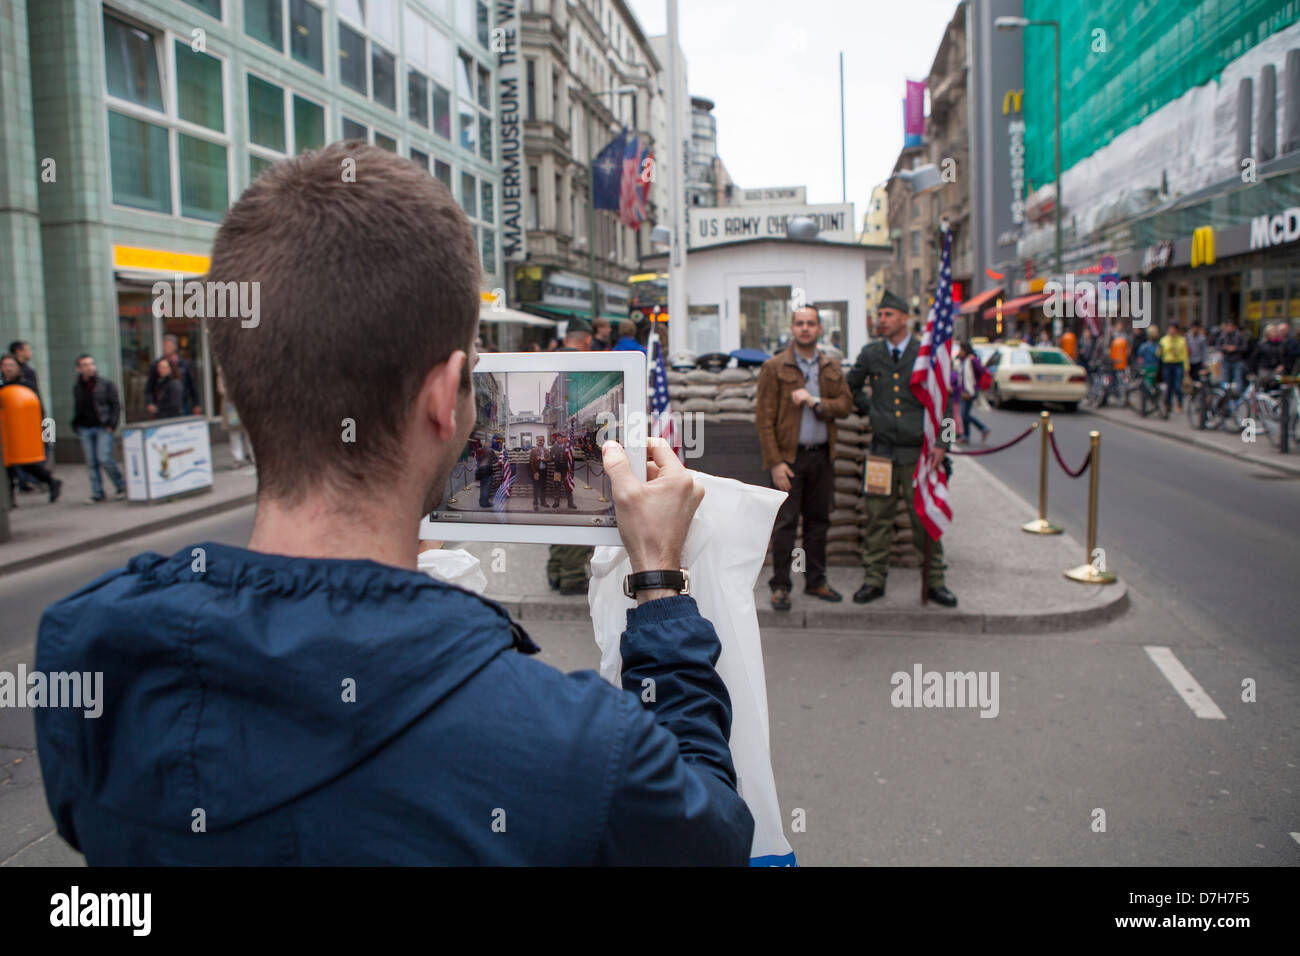 Los jóvenes turistas tomando fotografías con un Ipad en el Checkpoint Charly Foto de stock